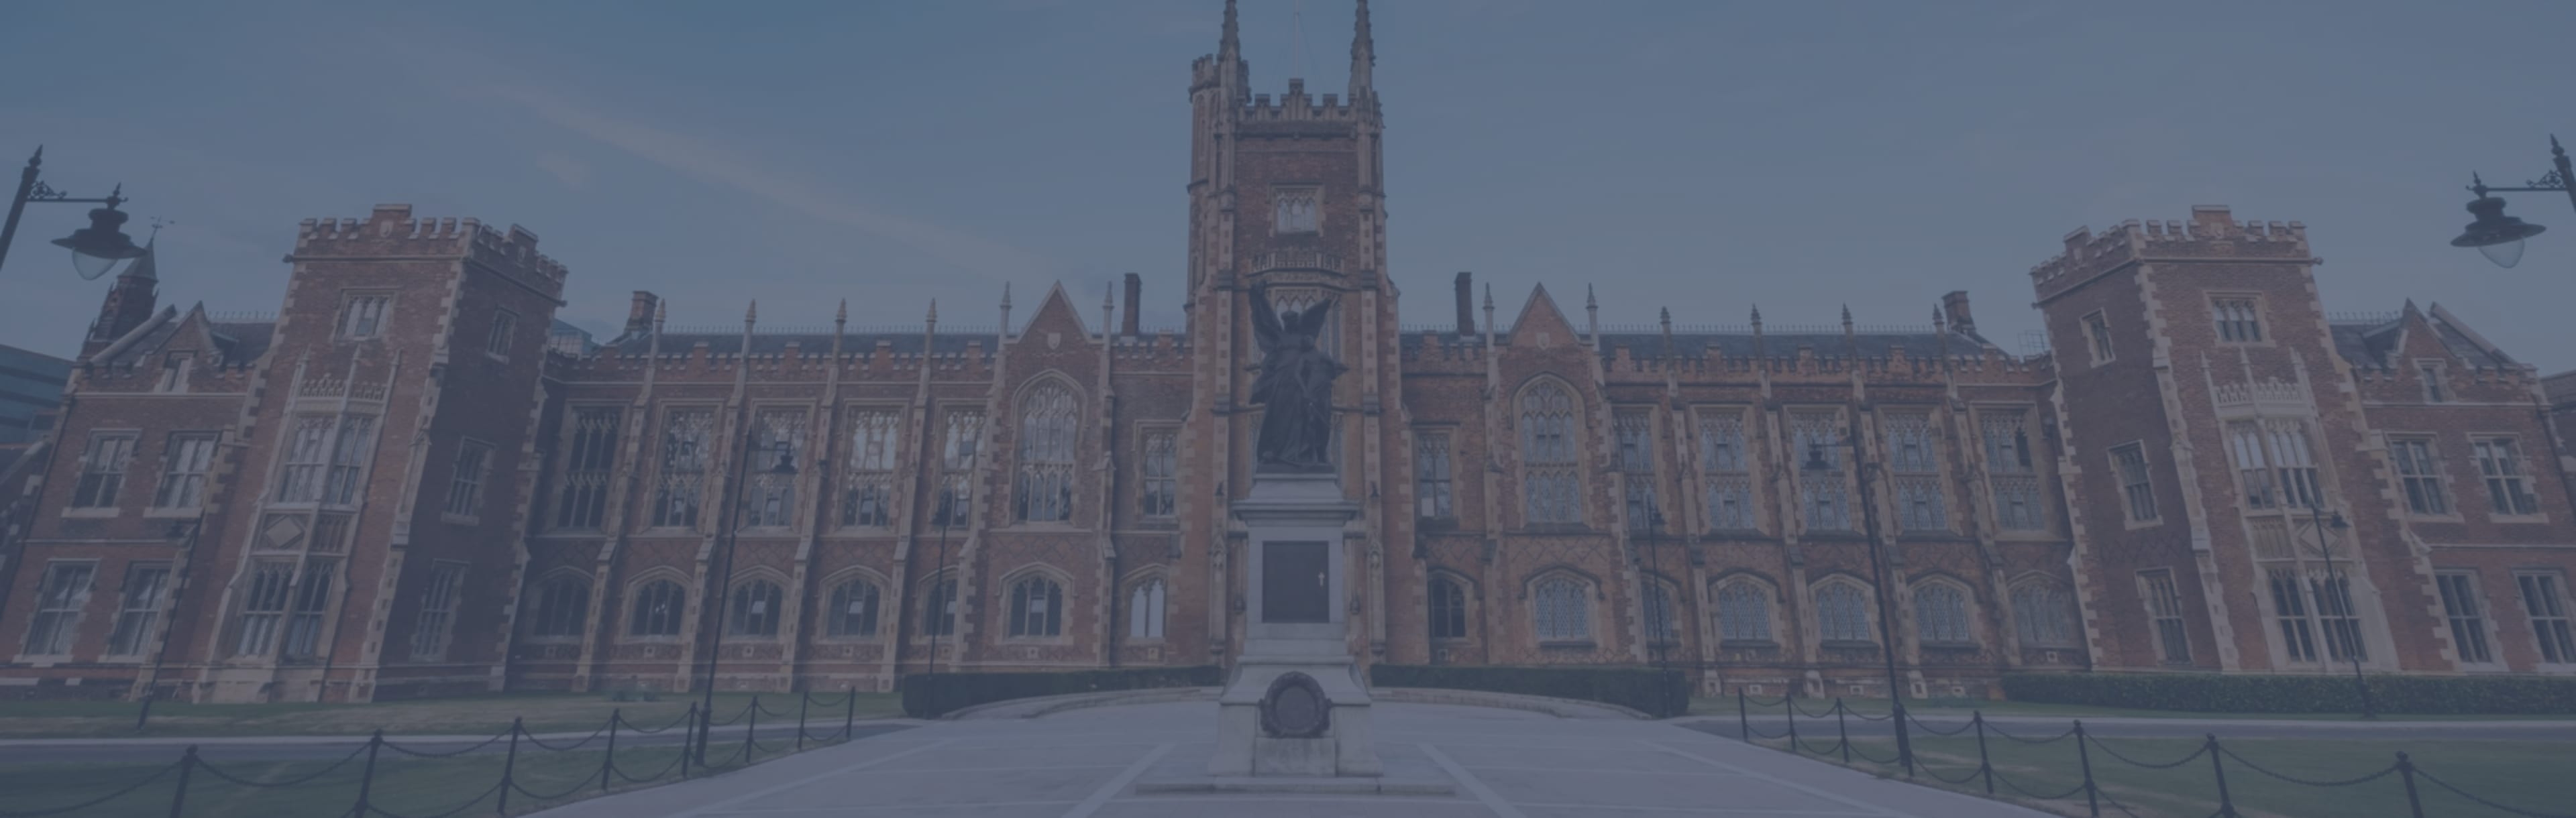 Queen's University Belfast - Faculty of Arts, Humanities and Social Sciences LLM rahvusvahelises inimõiguste õiguses